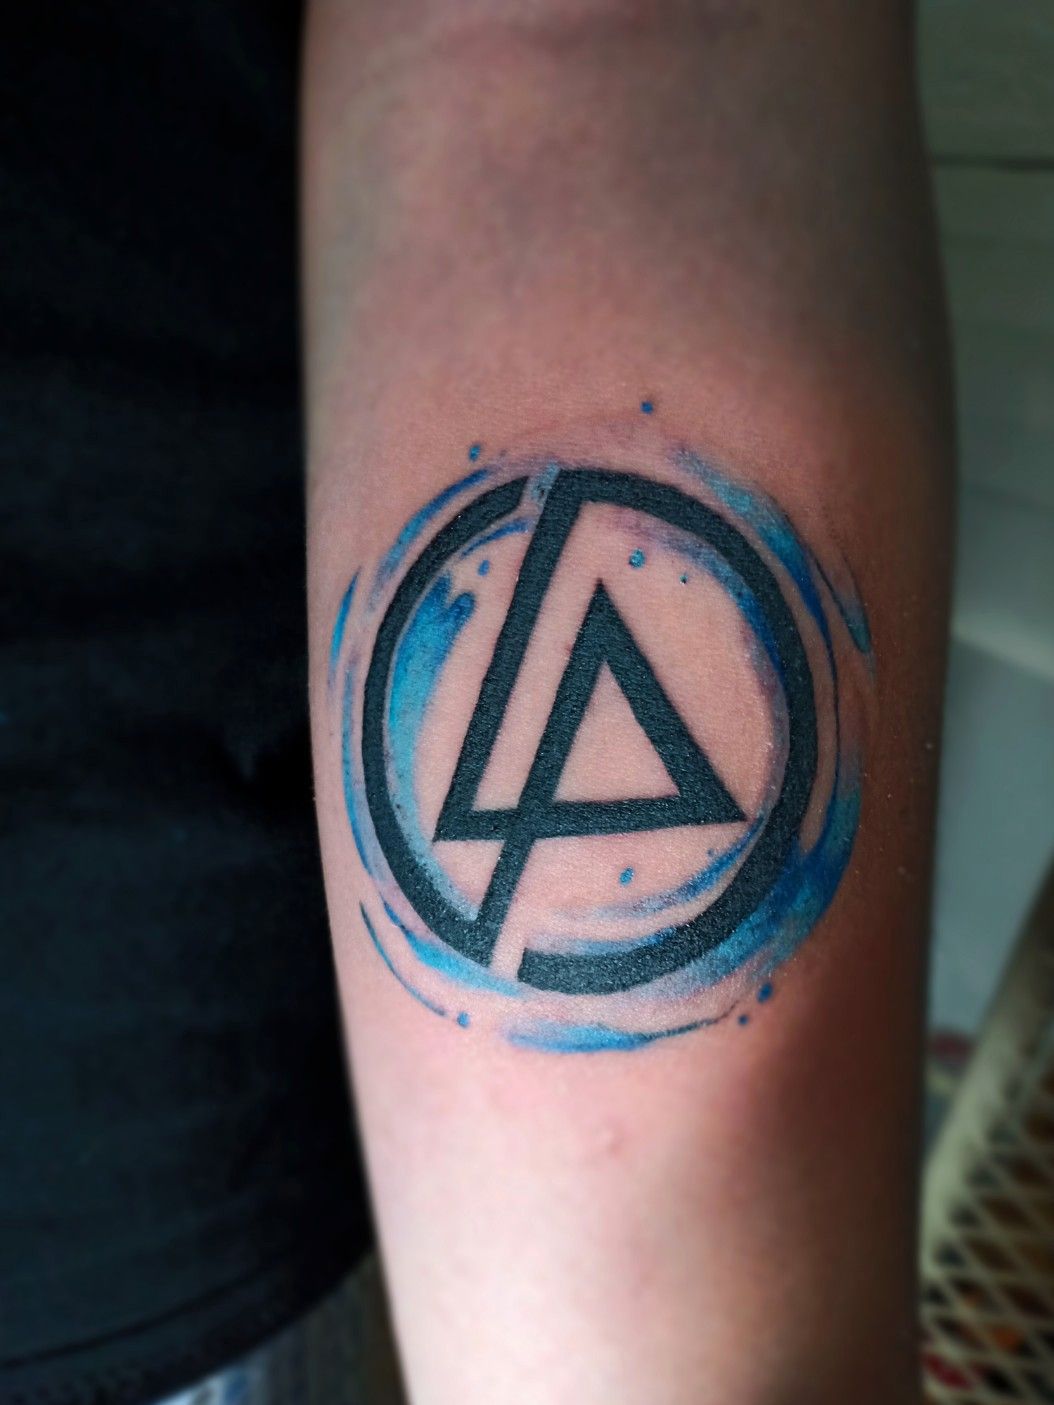 LP logos tattoo ideas lp  Lp tattoo Linkin park logo Wrist tattoo cover  up